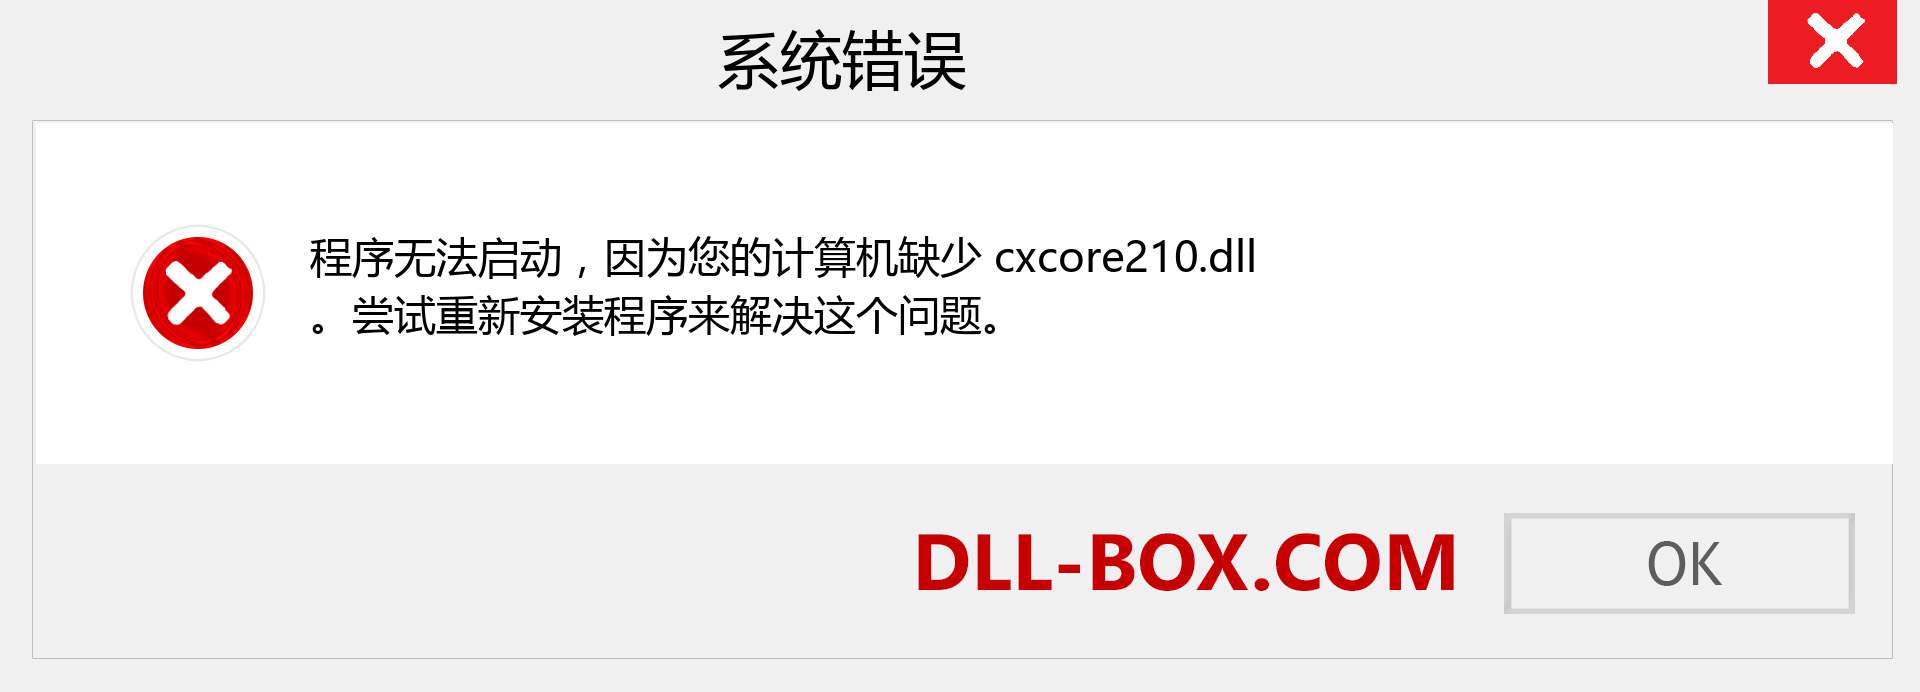 cxcore210.dll 文件丢失？。 适用于 Windows 7、8、10 的下载 - 修复 Windows、照片、图像上的 cxcore210 dll 丢失错误